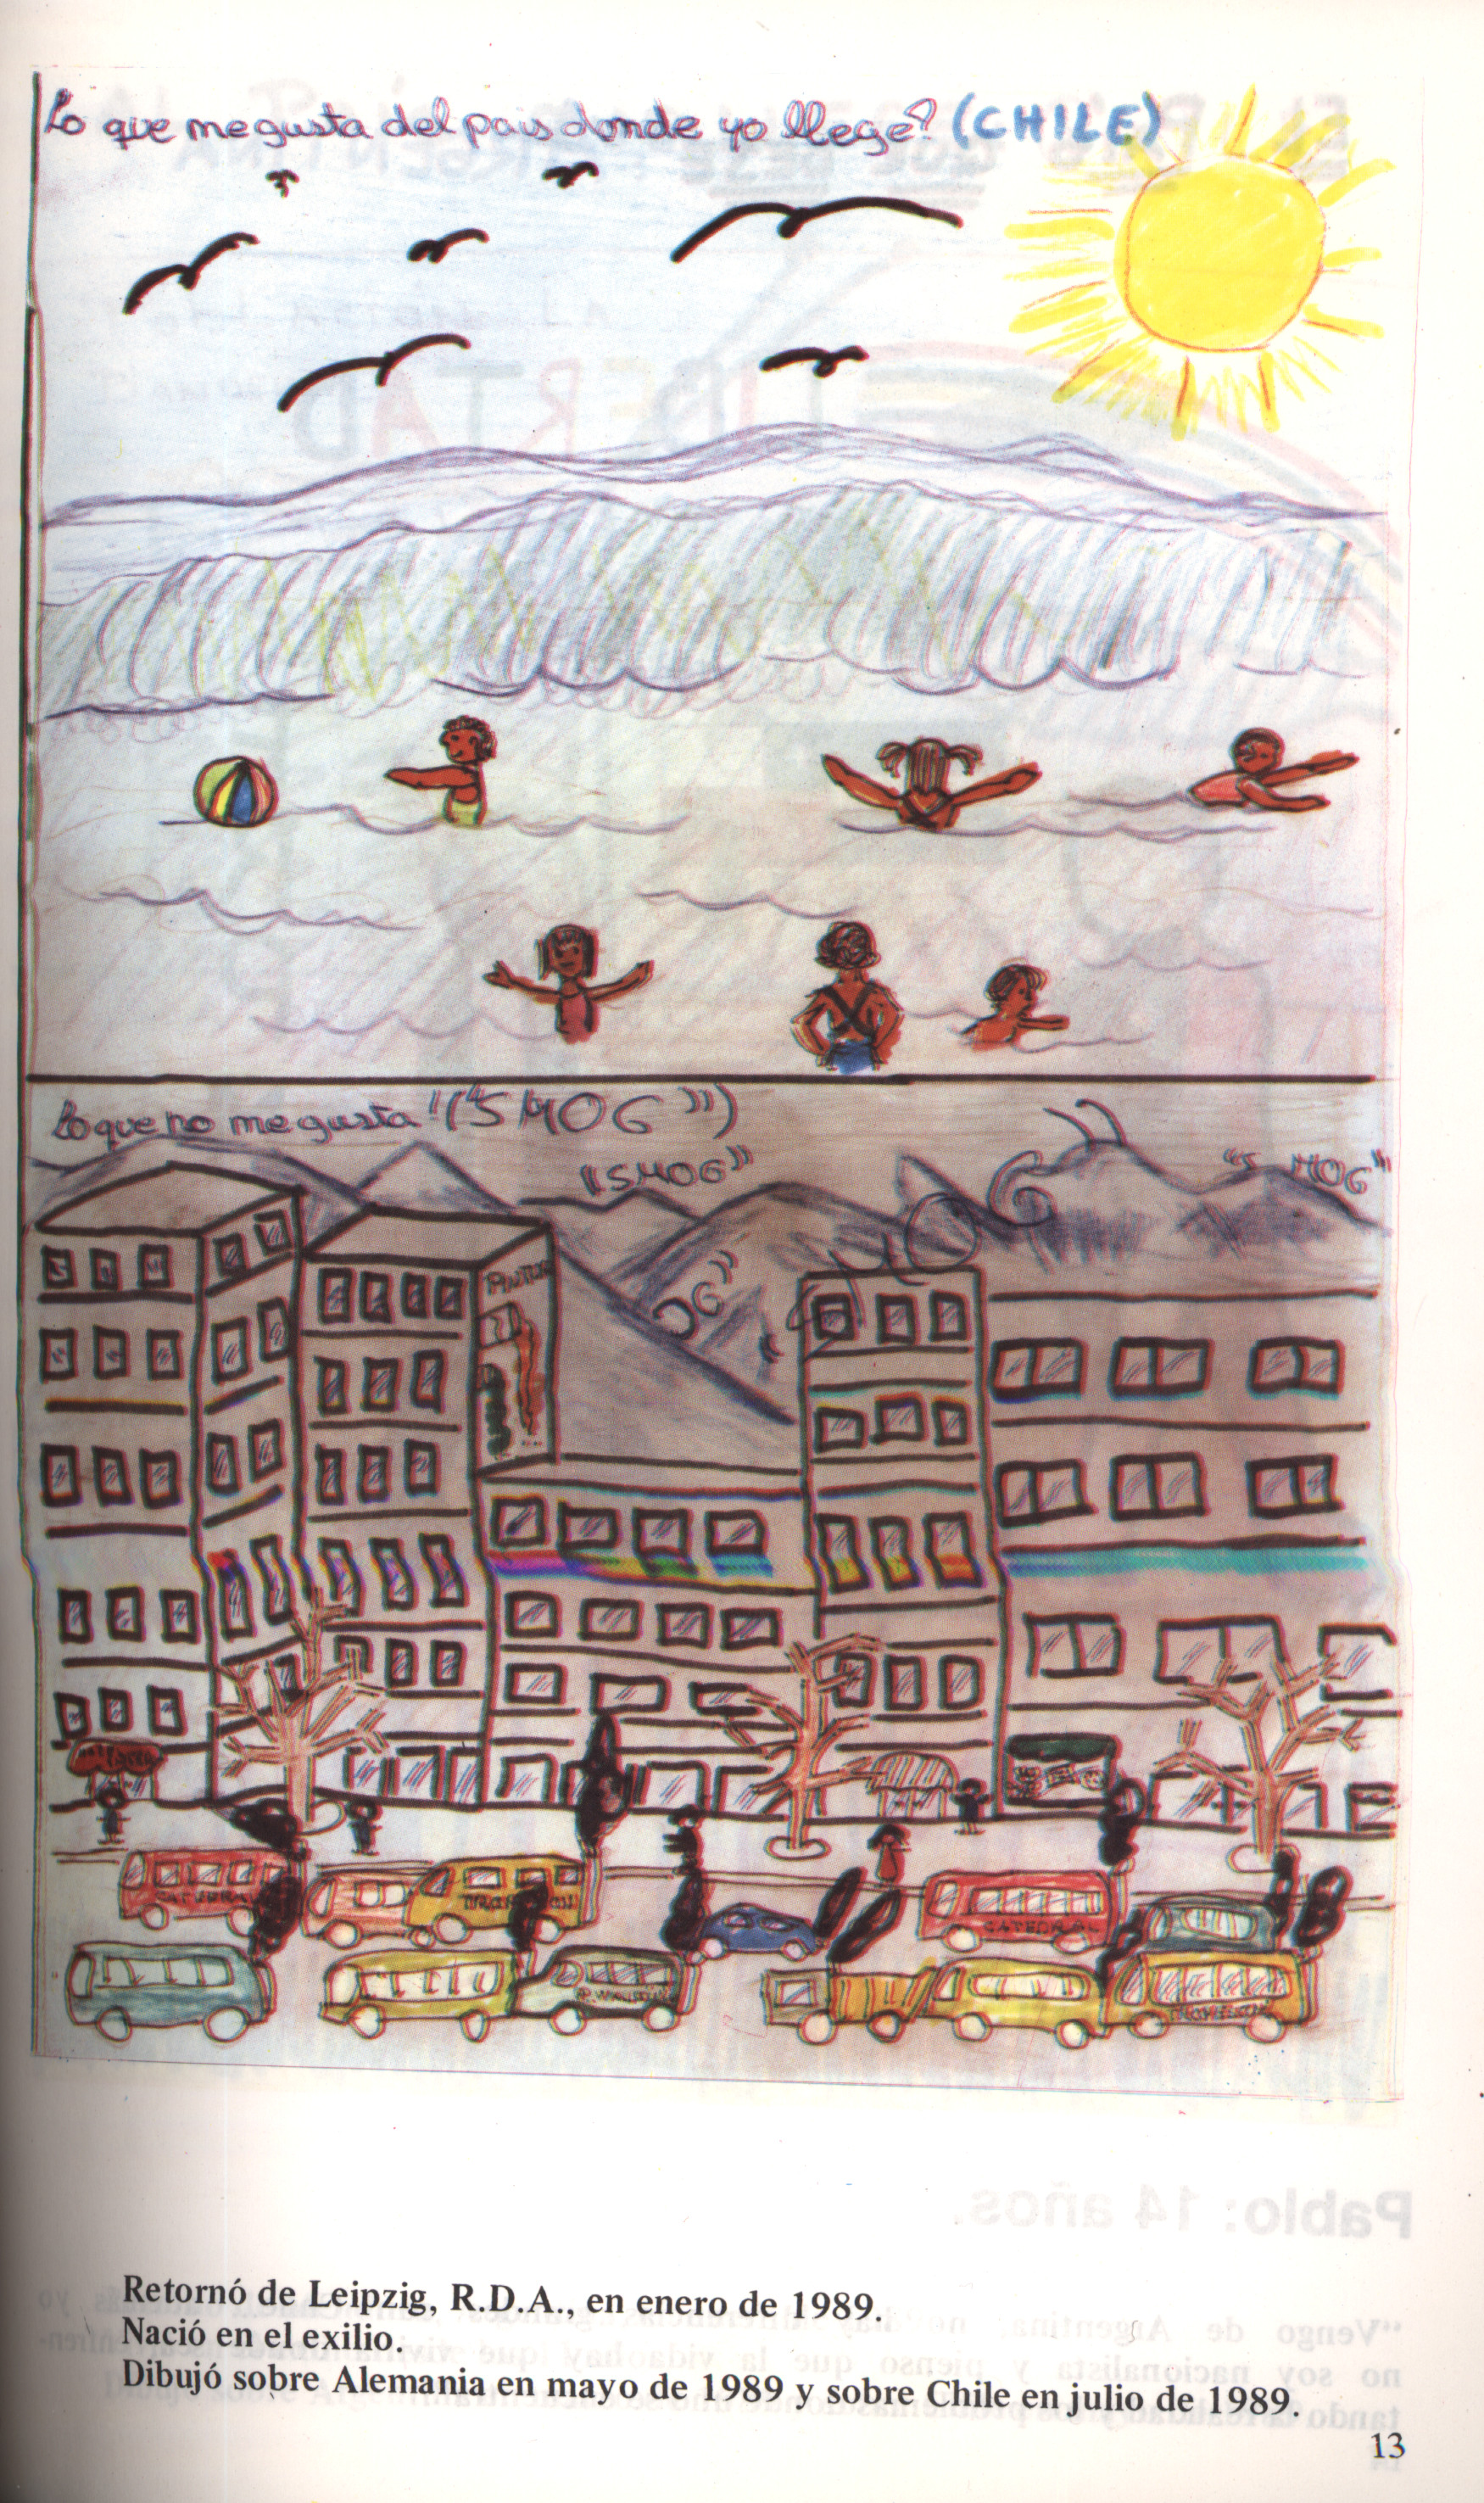 Dibujo de Dominique sobre Chile, 11 años, julio de 1989